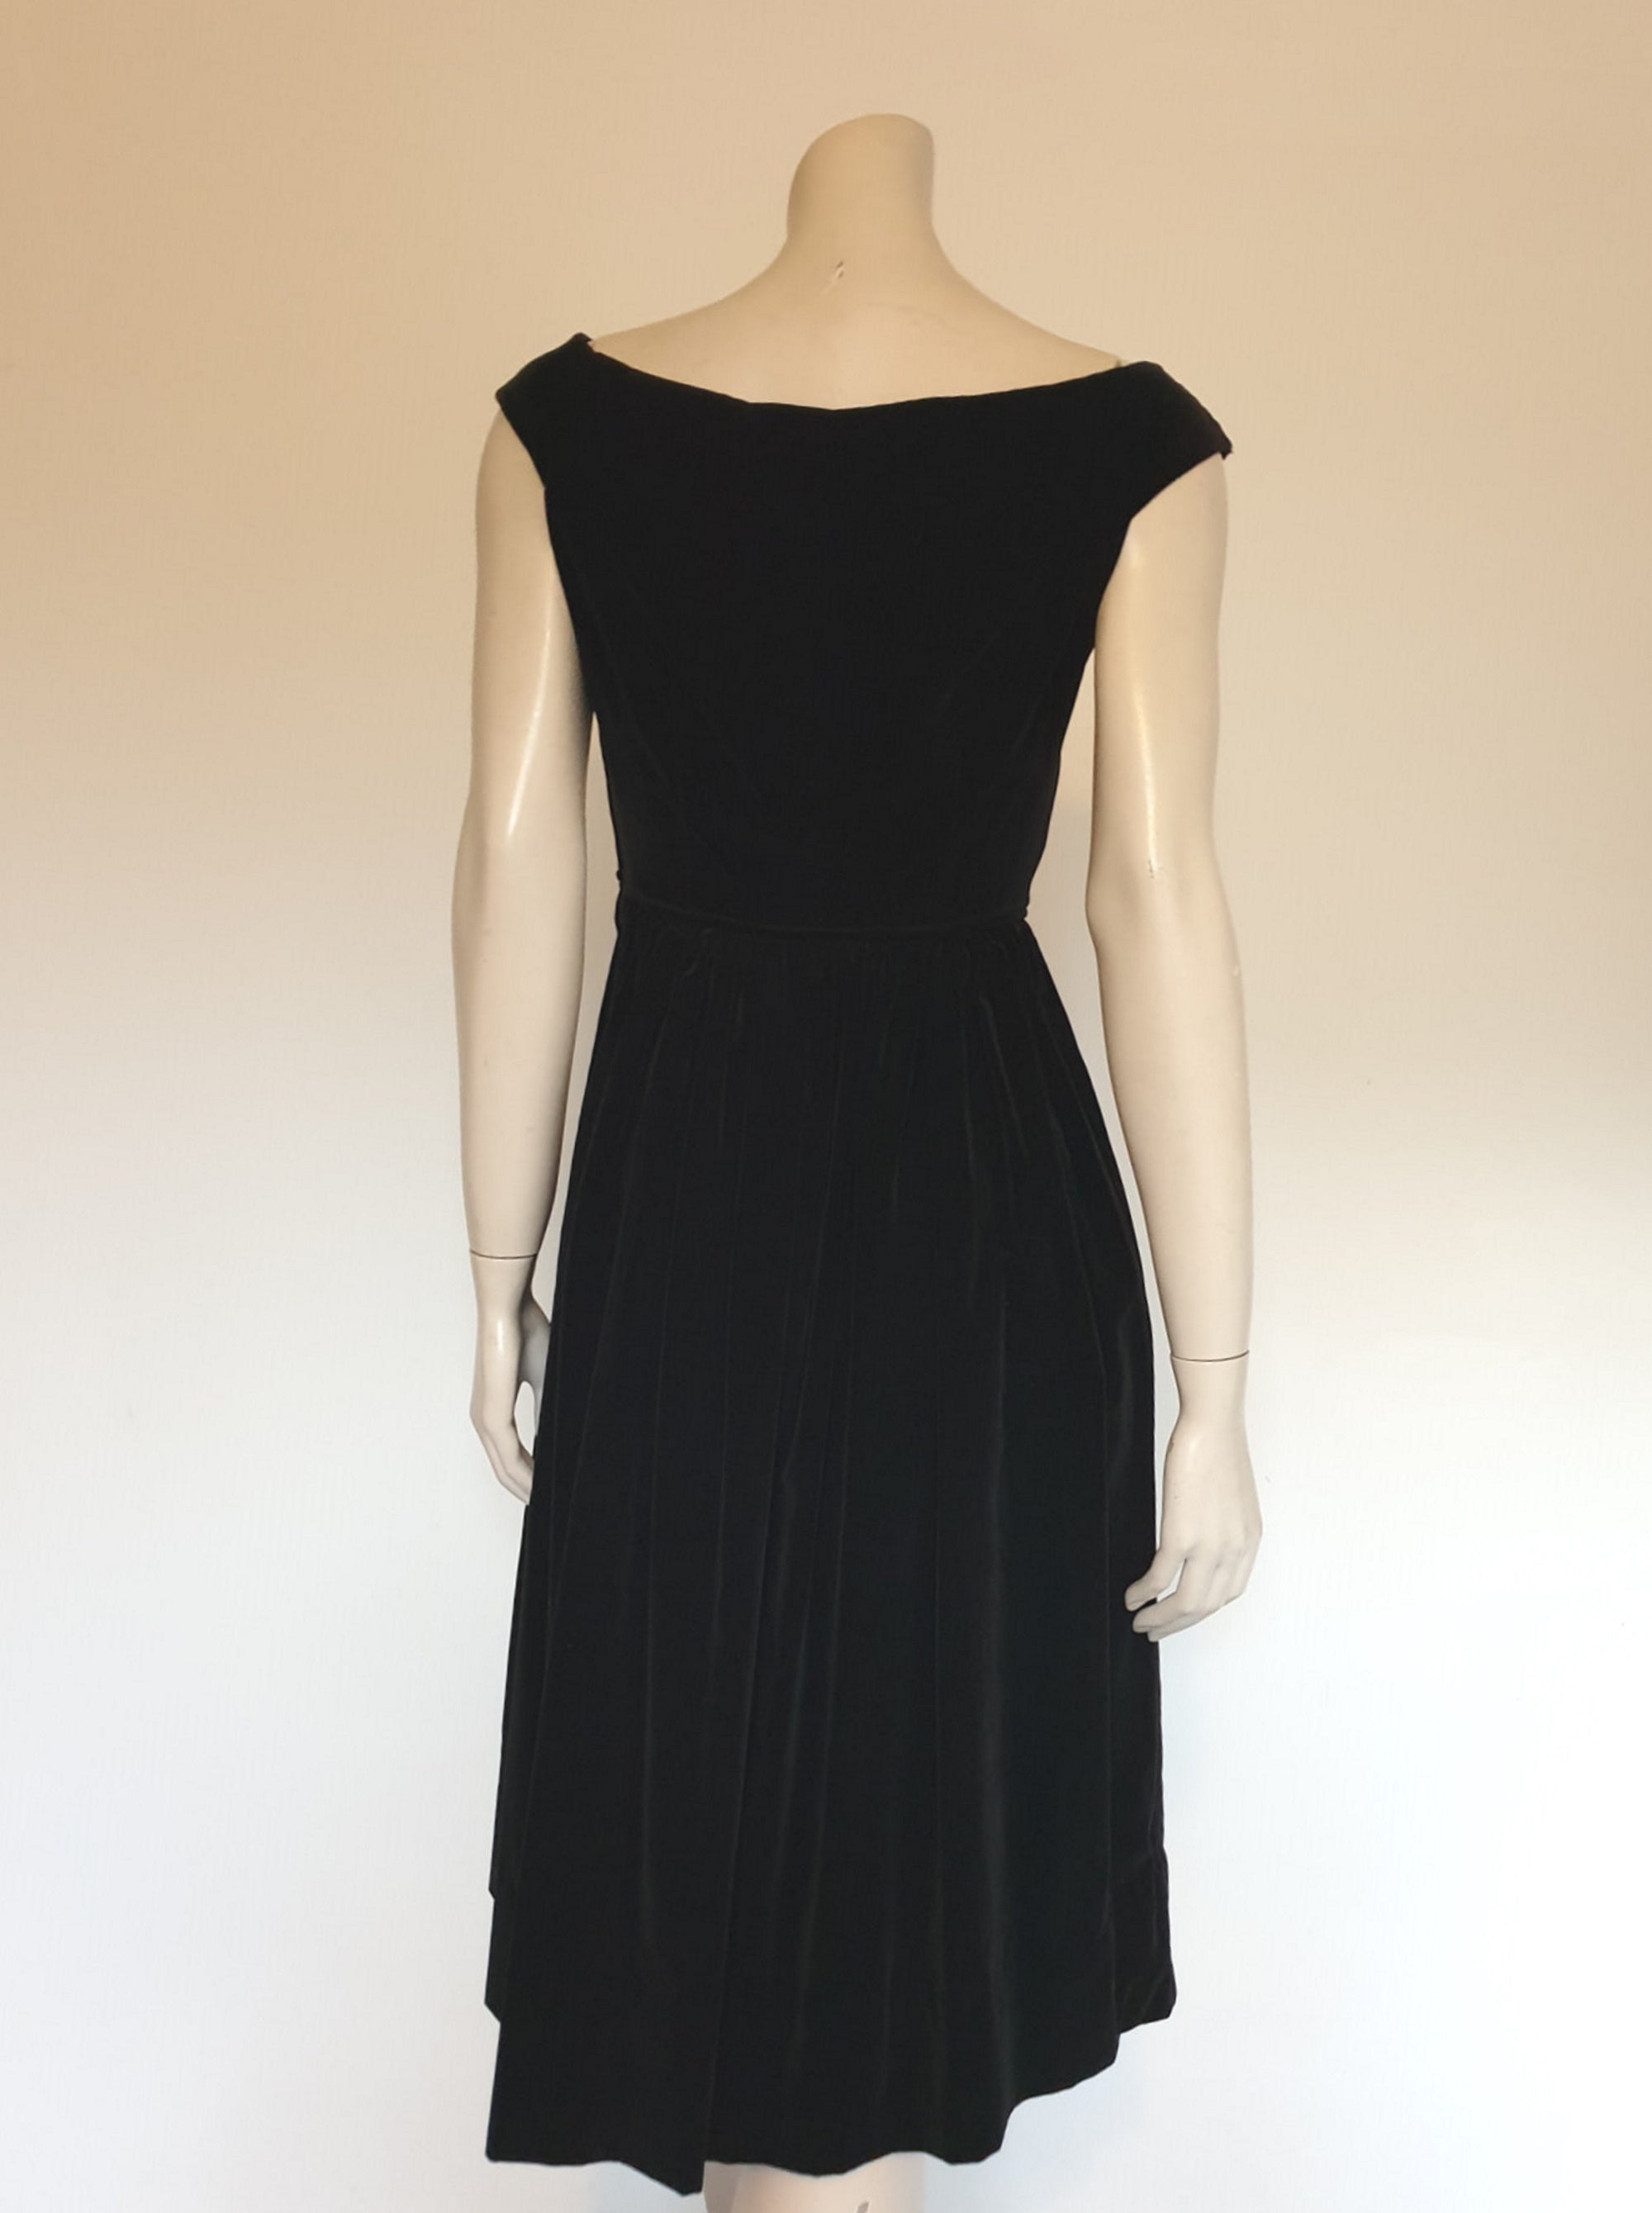 1950s 1960s vintage black velvet dress with wide neck